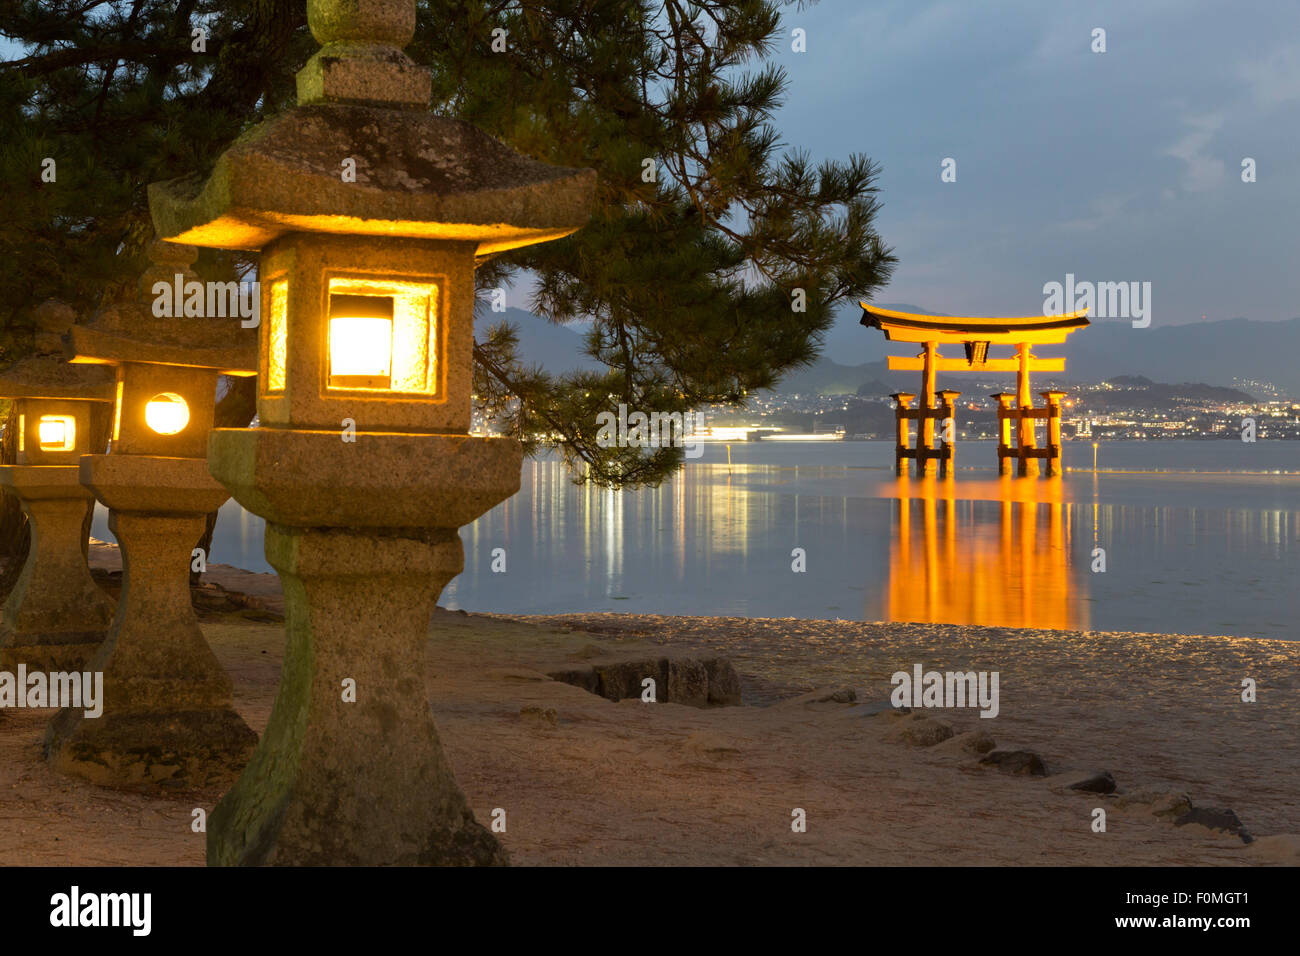 Le Miyajima de torii flottant d'Itsukushima au crépuscule, l'île de Miyajima, dans l'ouest de Honshu, Japon, Asie Banque D'Images